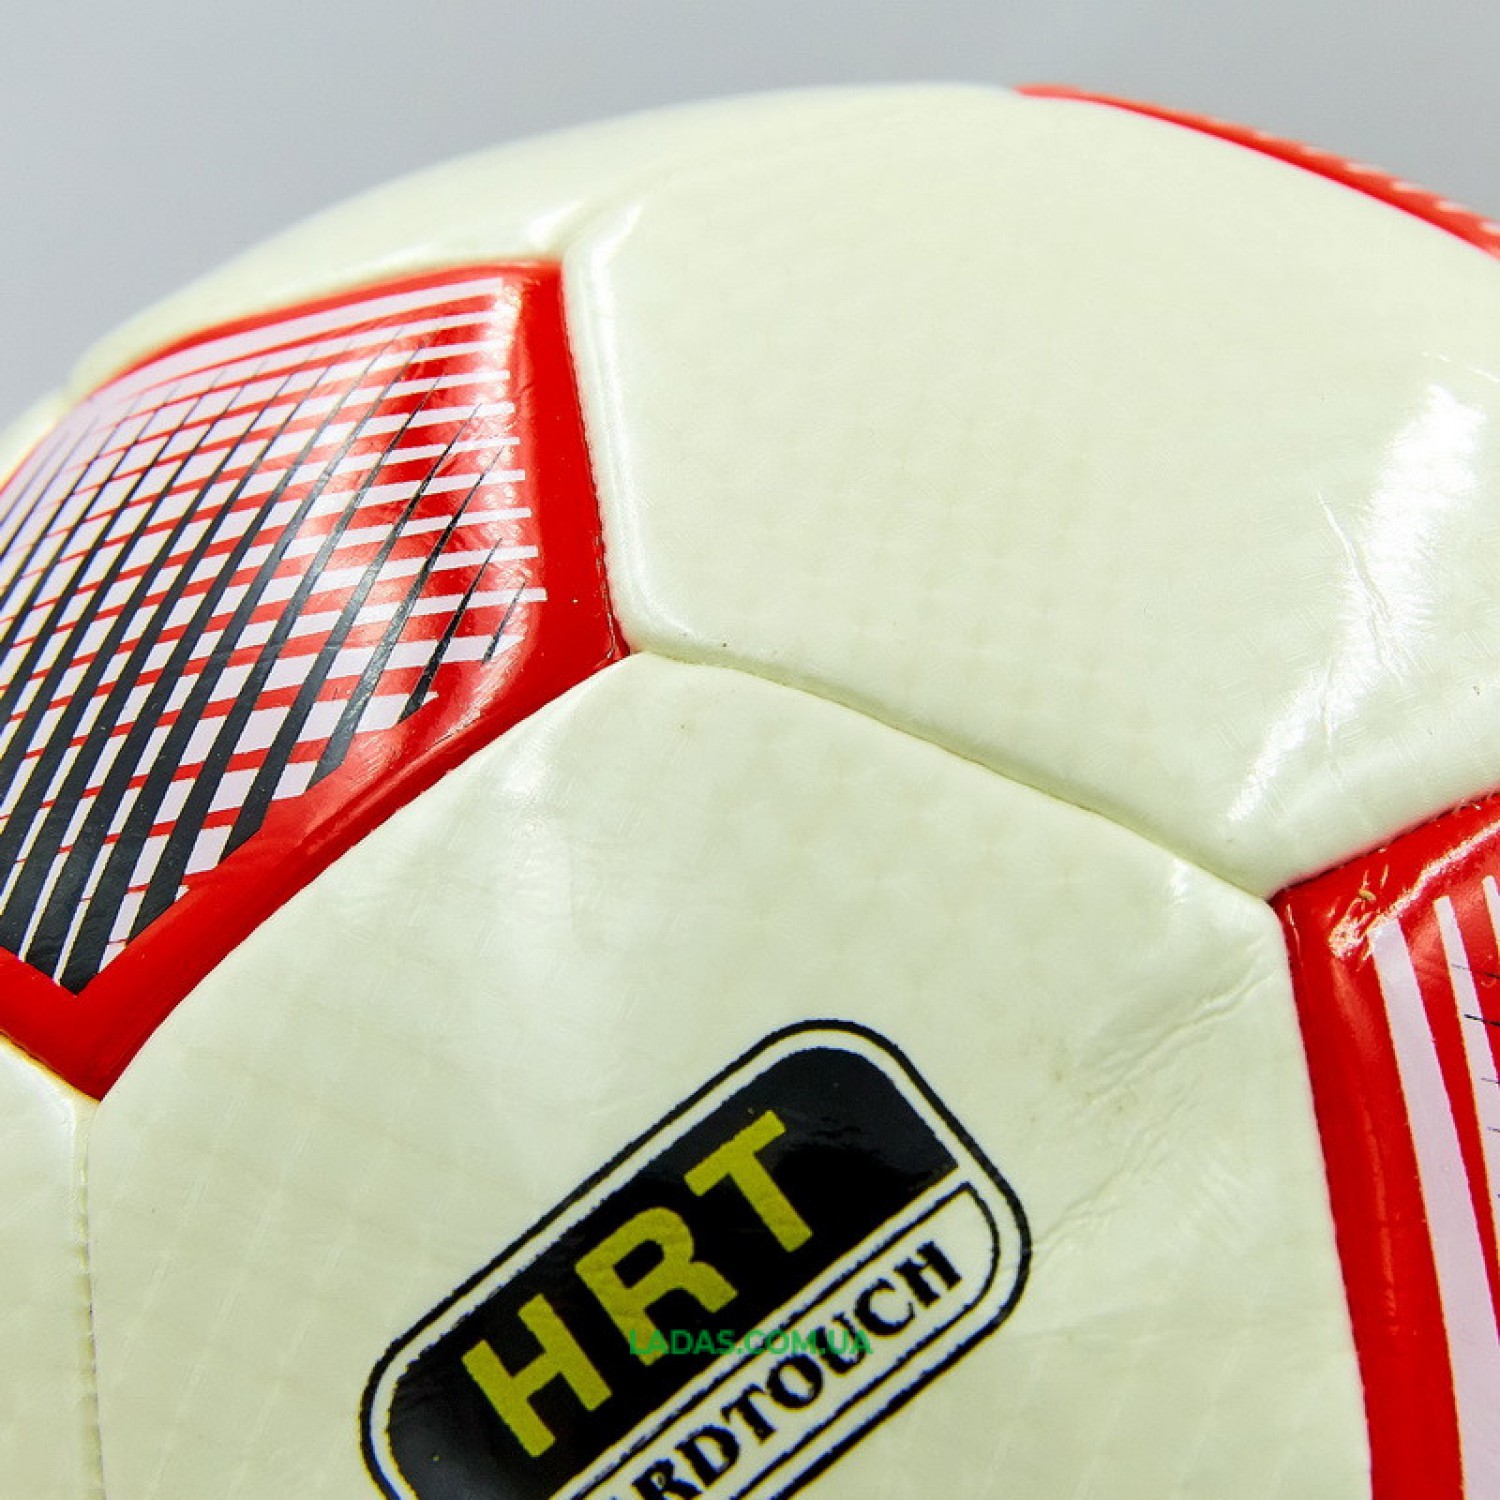 Мяч футбольный №5 PU HYDRO TECHNOLOGY OFFICIAL FB-0178 цвета в ассортименте (№5, 5 сл., сшит вручную)